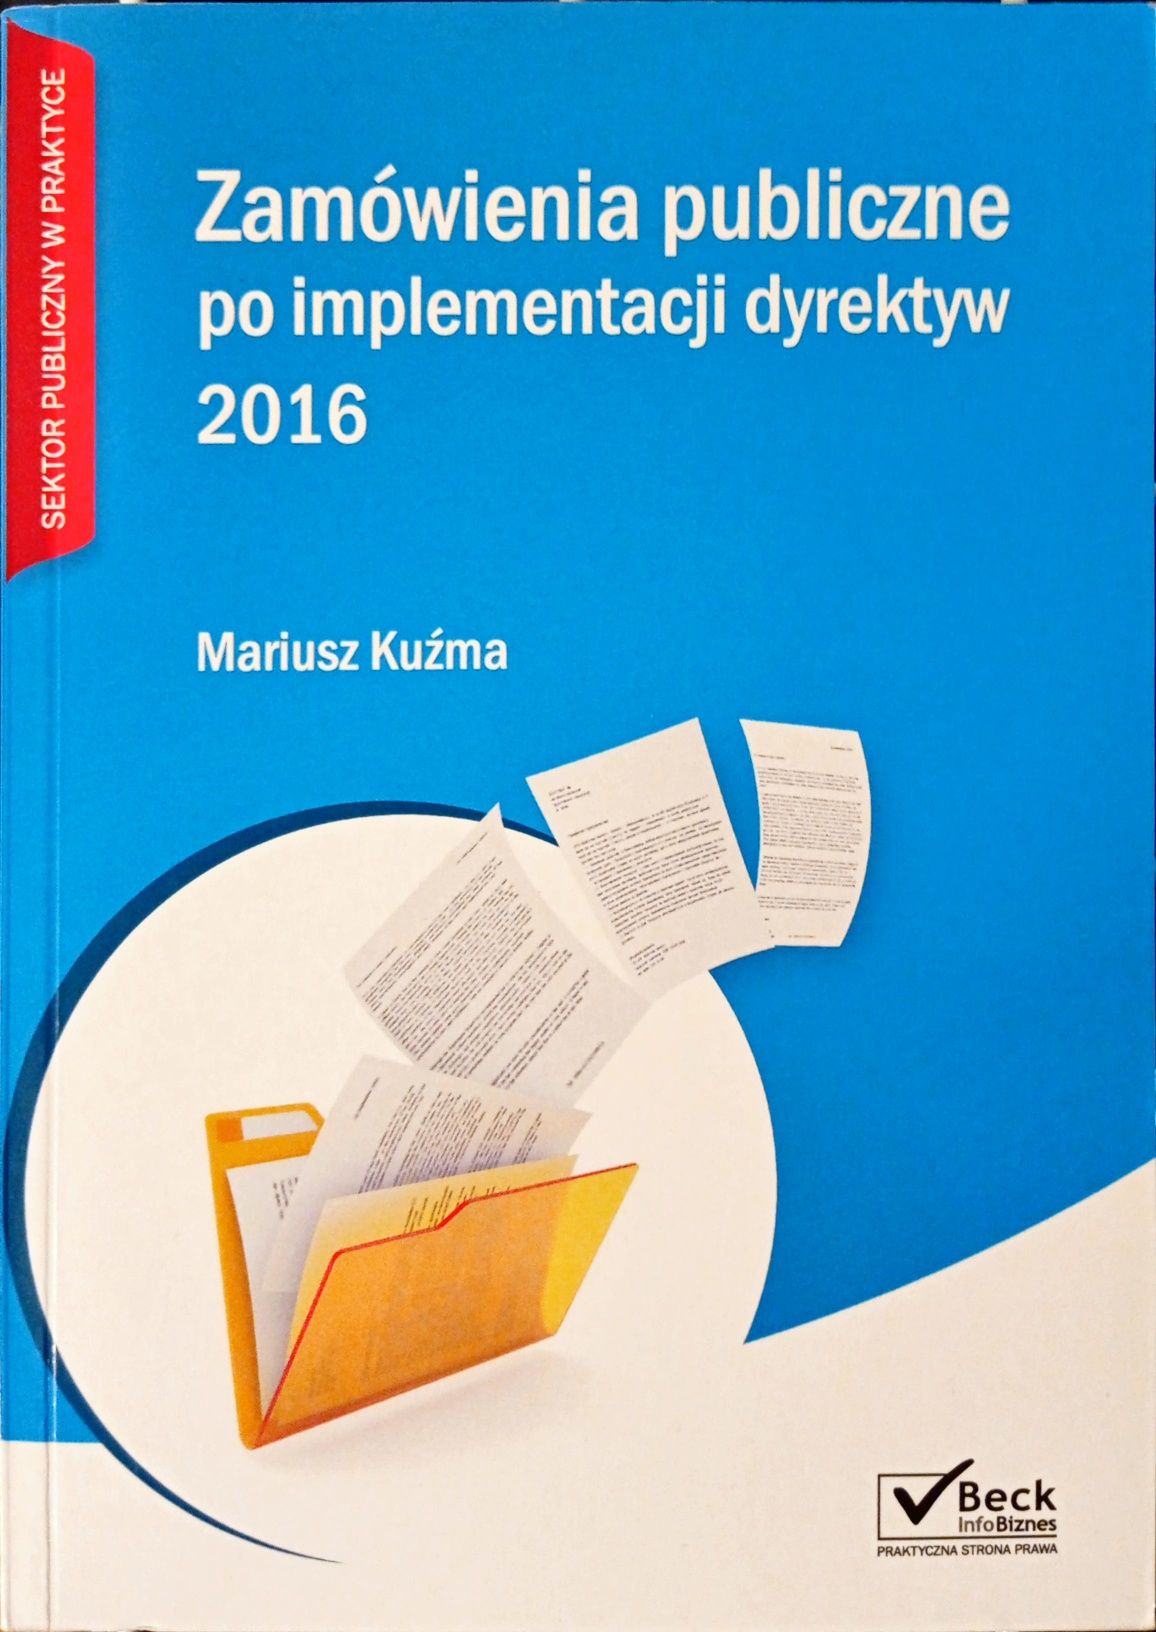 Zamówienia publiczne po implementacji dyrektyw 2016